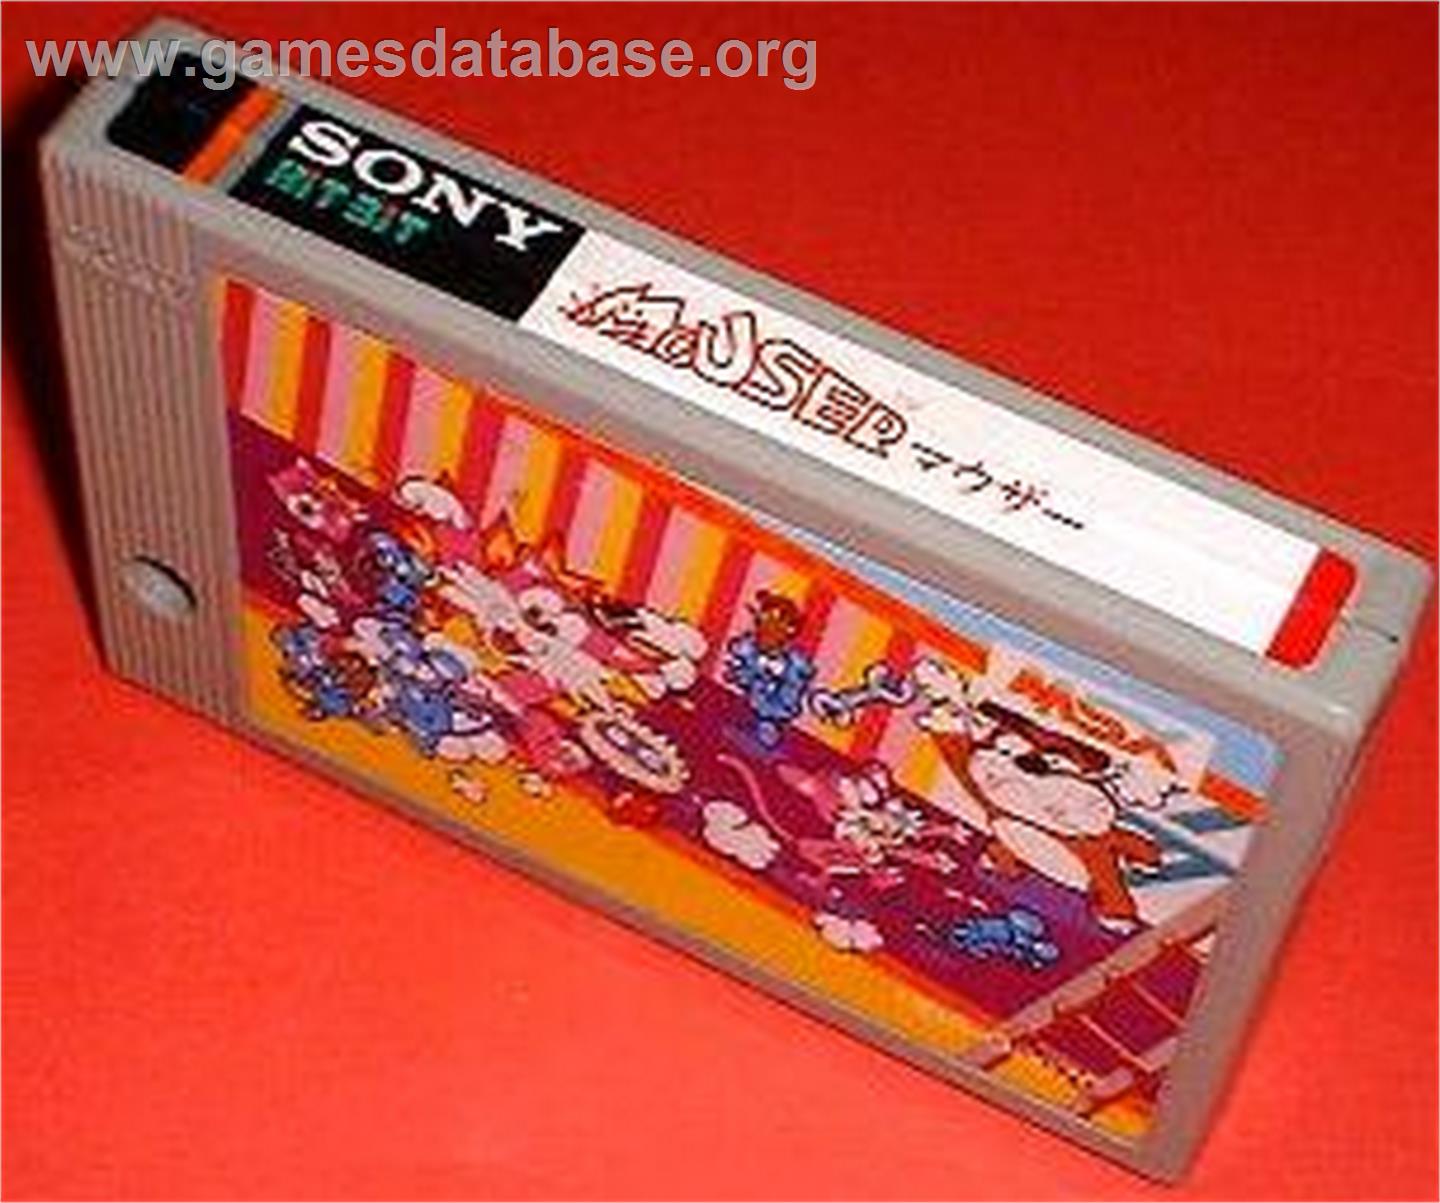 Mouser - MSX - Artwork - Cartridge